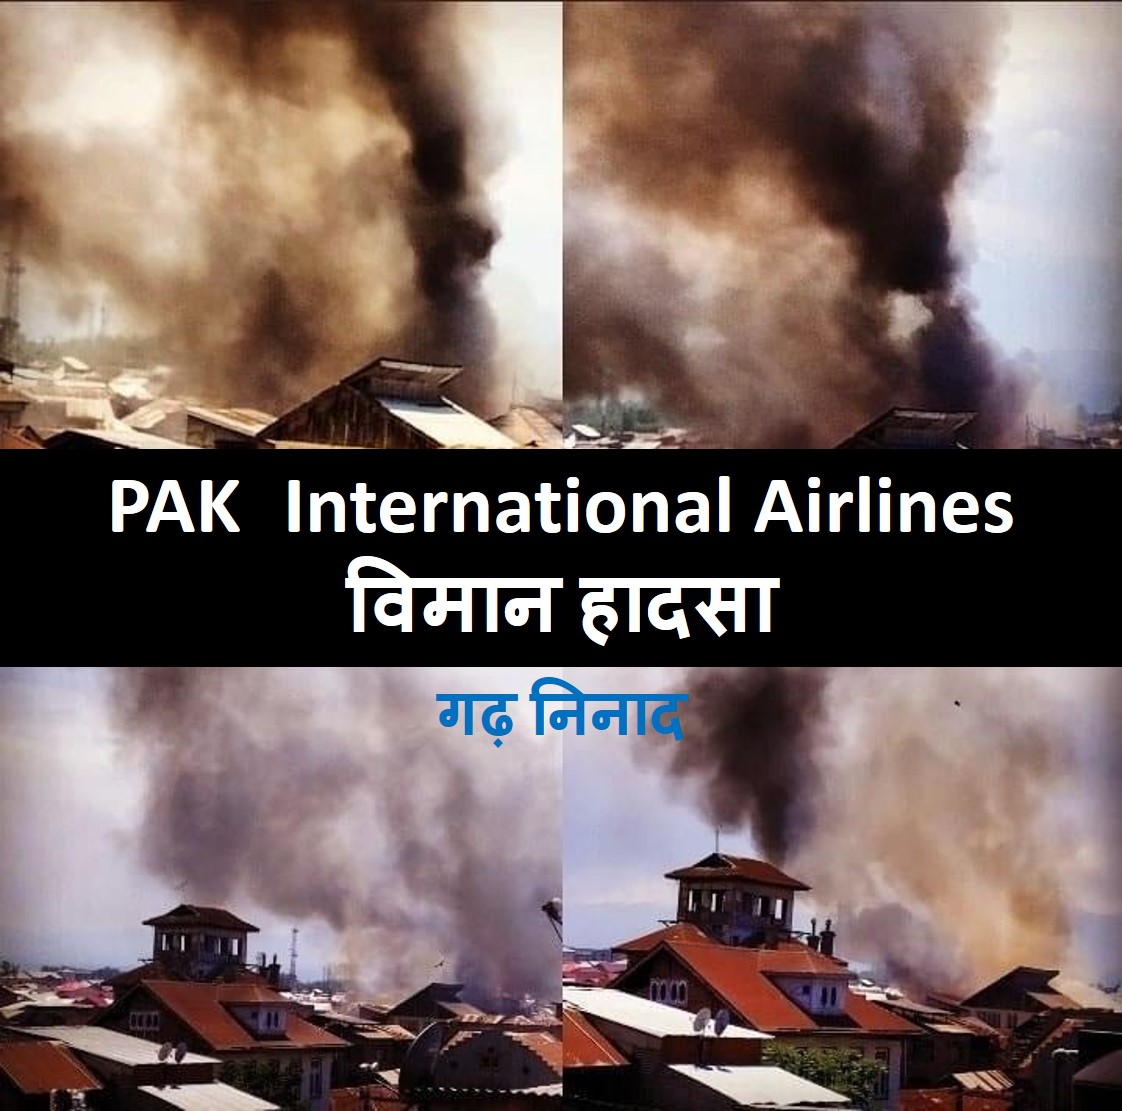 पाकिस्तान International Airlines के 98 यात्री भरे विमान का बड़ा हादसा, रिहायशी इलाके में गिरने से कई मकानों में लगी आग